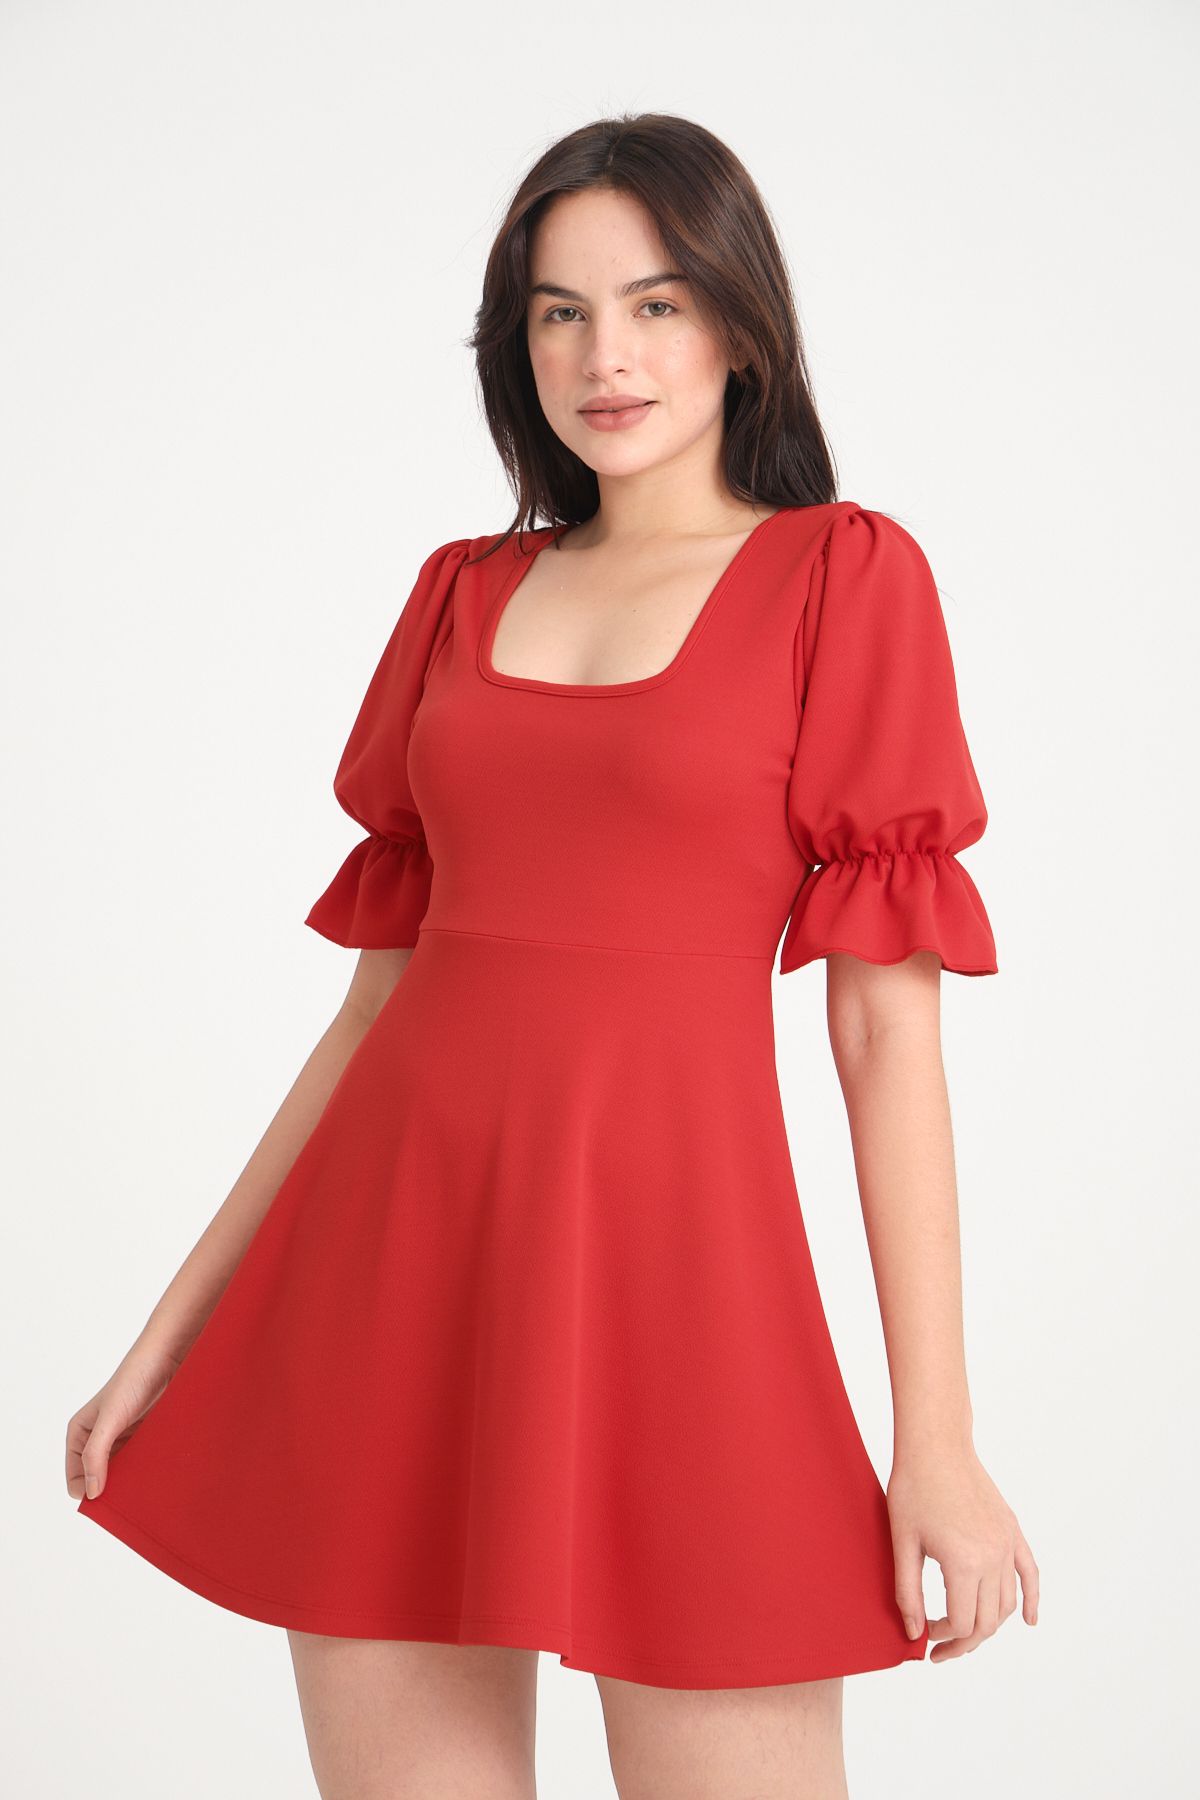 segrock Kadın Balon Kollu Krep Midi Elbise Kırmızı